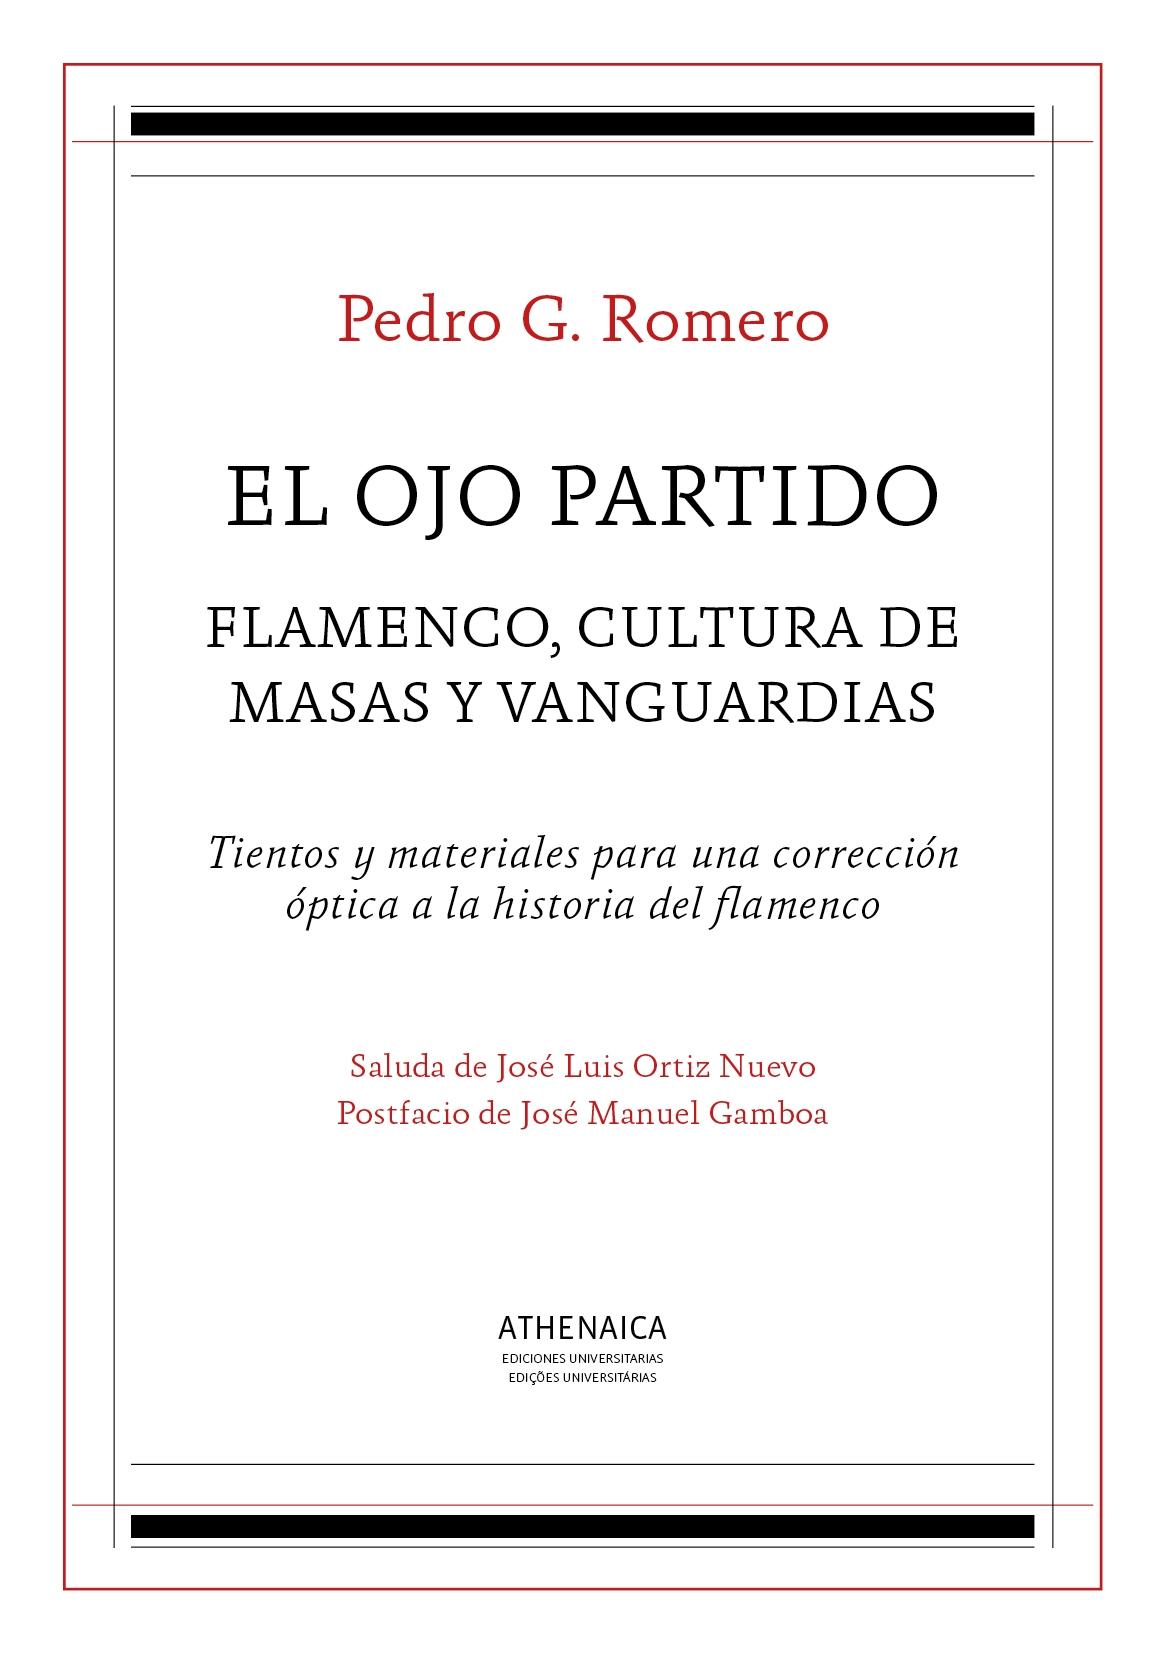 El Ojo Partido "Flamenco, Cultura de Masas y Vanguardias"